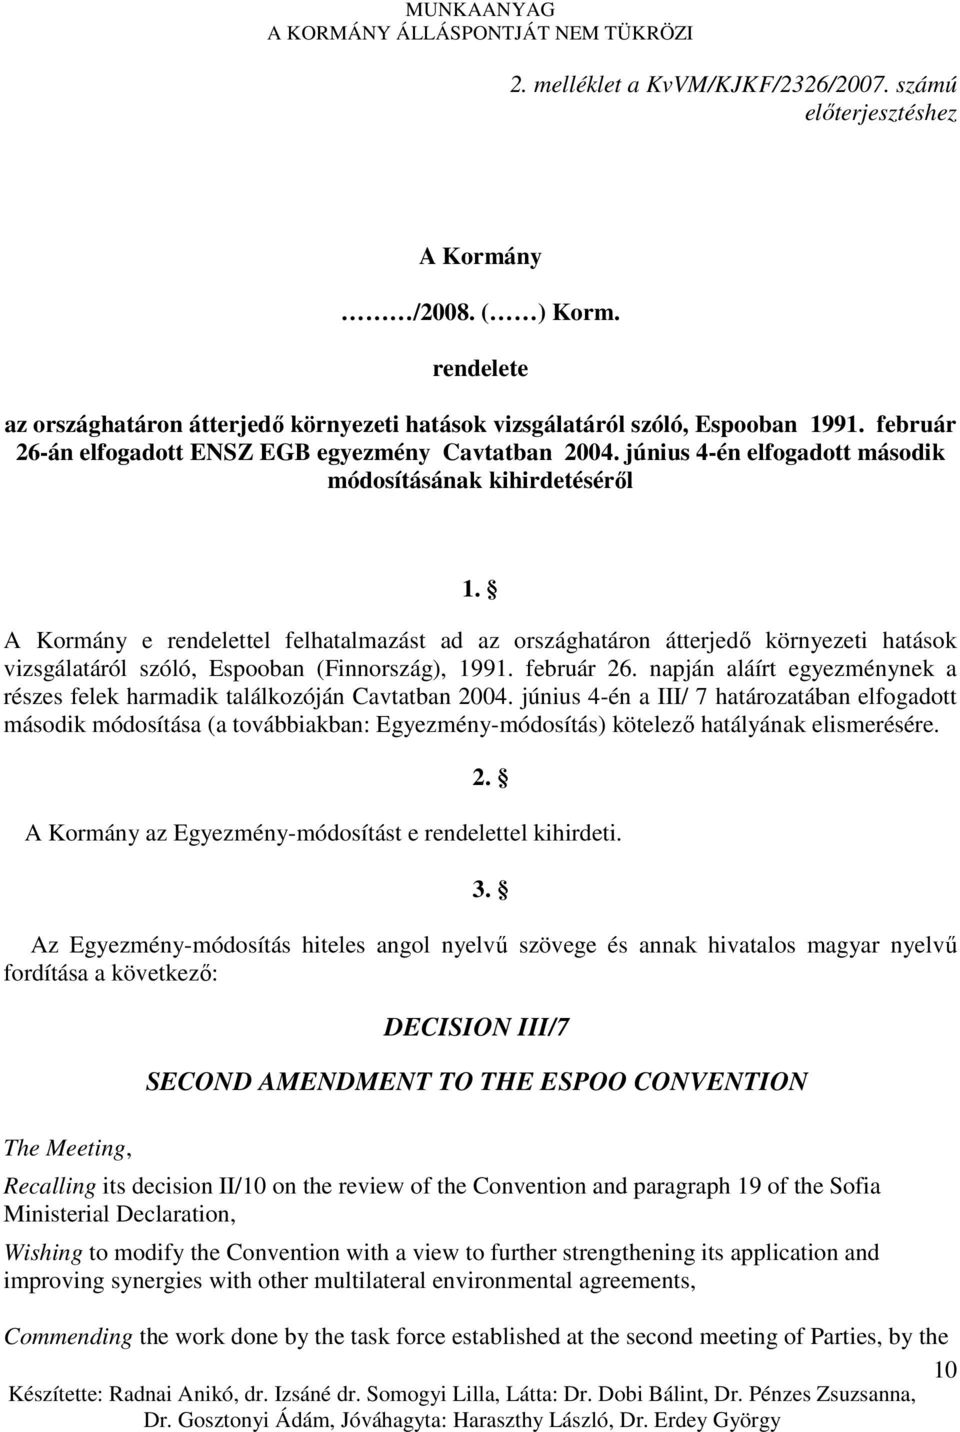 A Kormány e rendelettel felhatalmazást ad az országhatáron átterjedı környezeti hatások vizsgálatáról szóló, Espooban (Finnország), 1991. február 26.